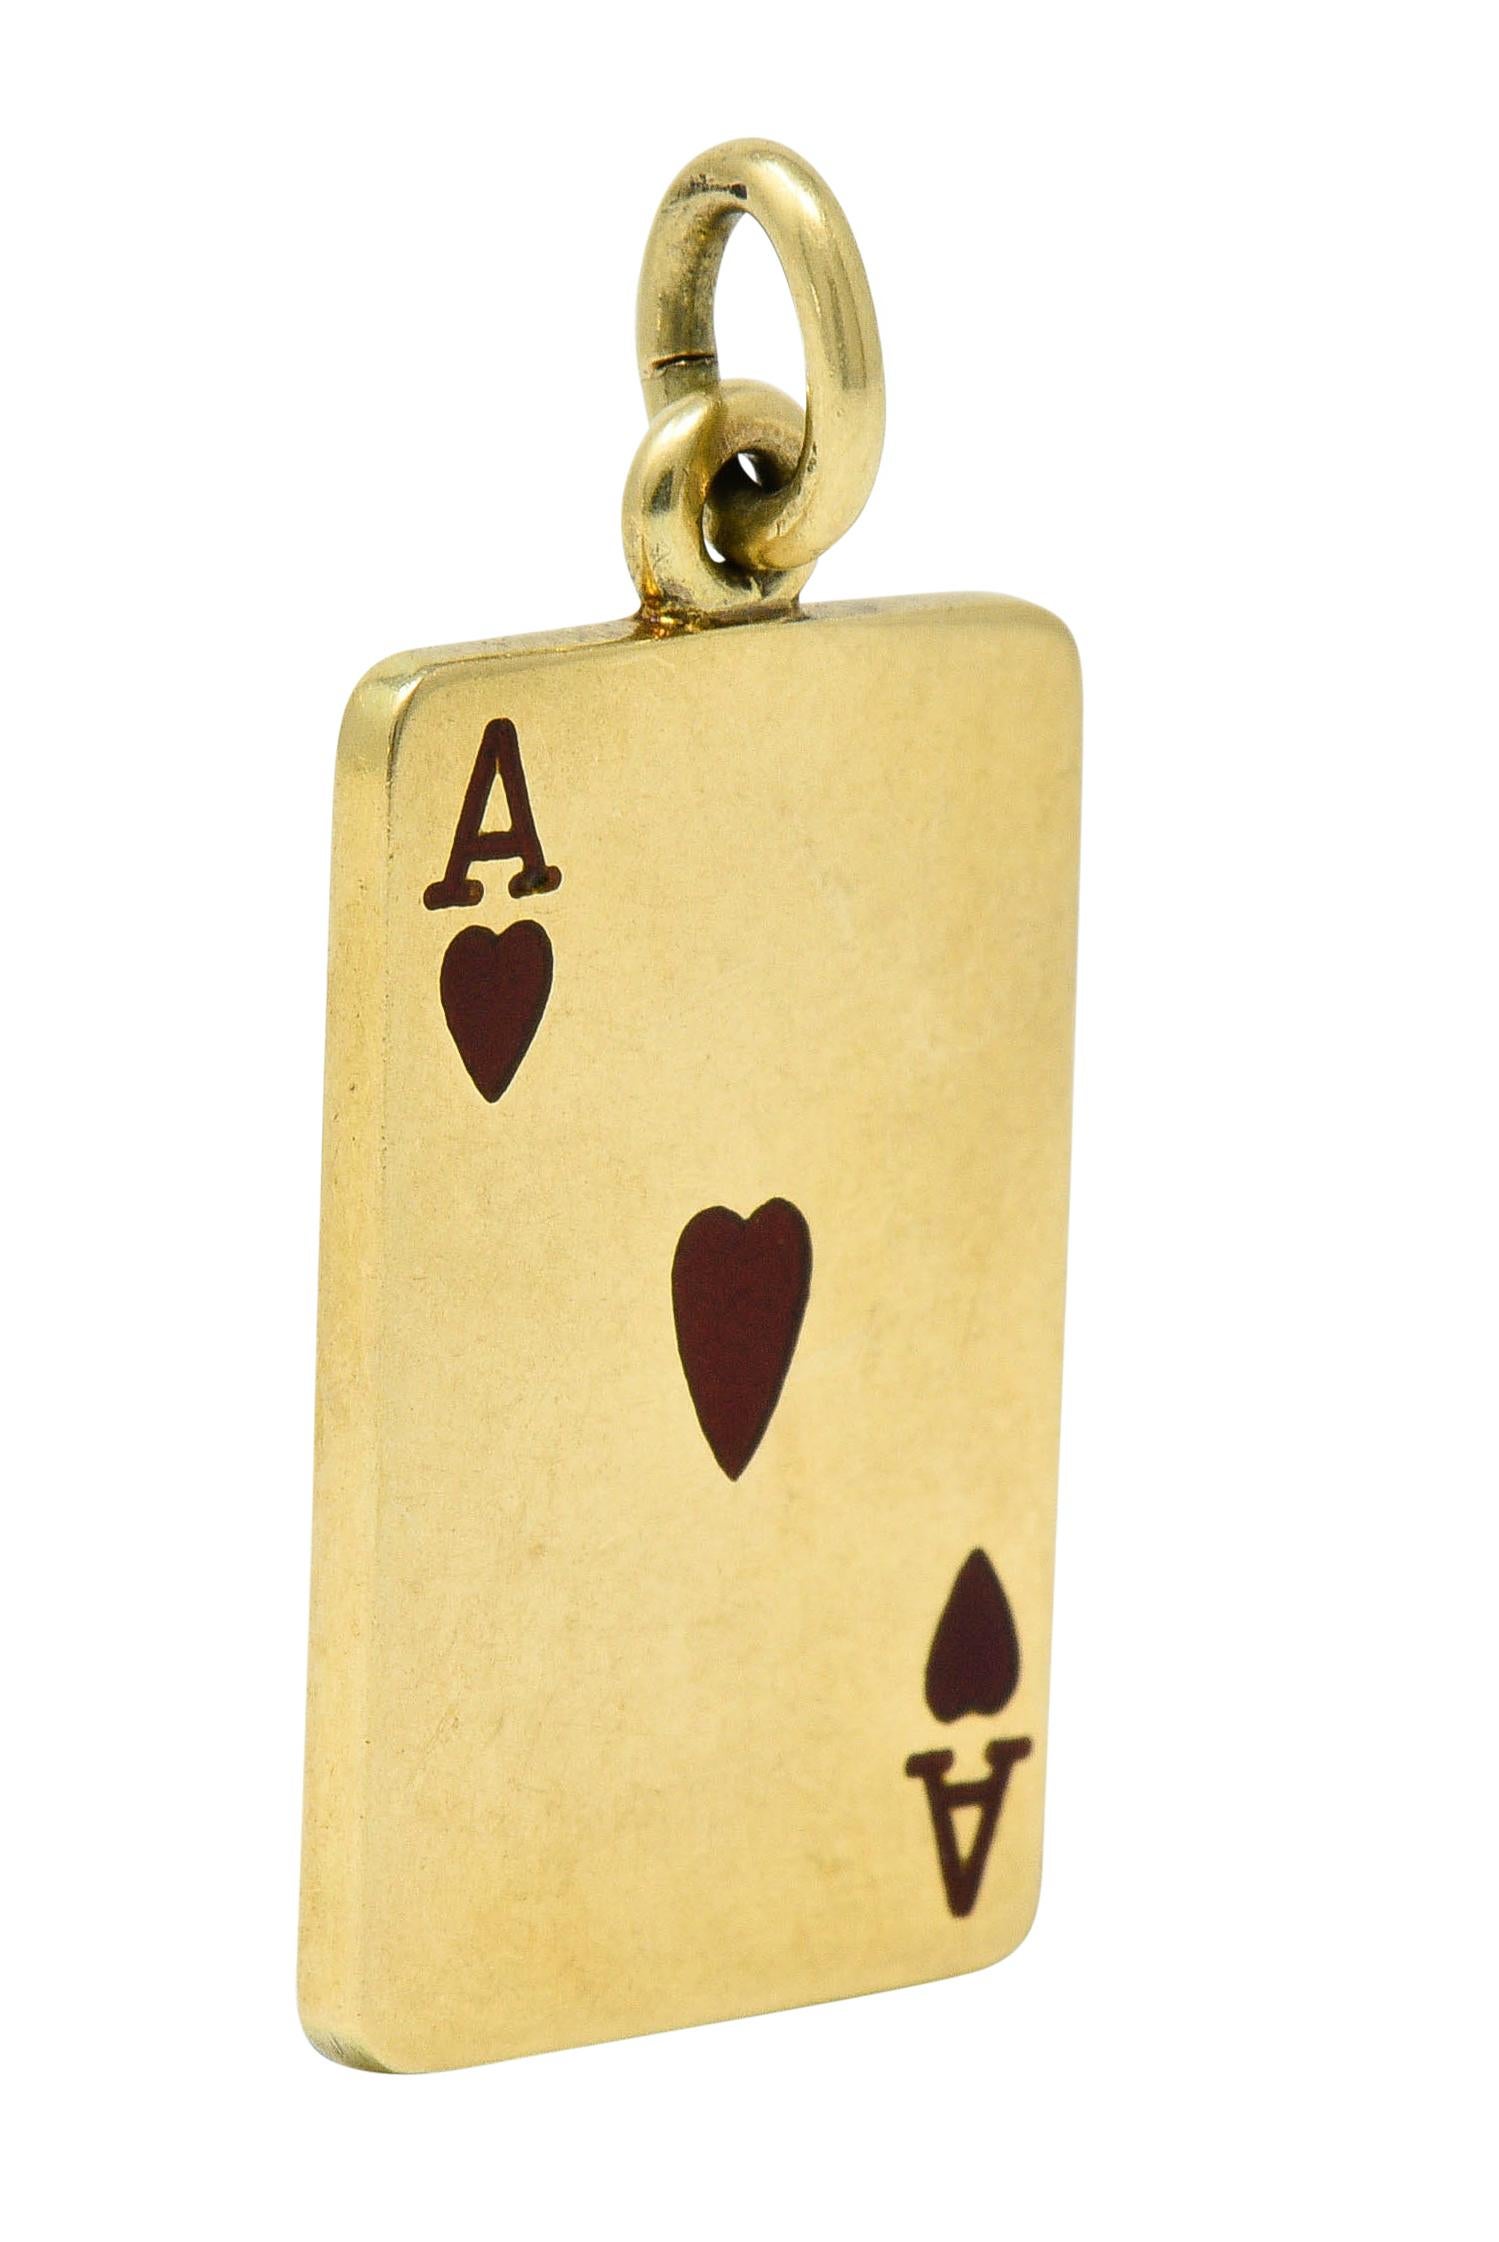 与え GIPSolid 14k Yellow Gold LAS VEGAS Playing Cards Charm